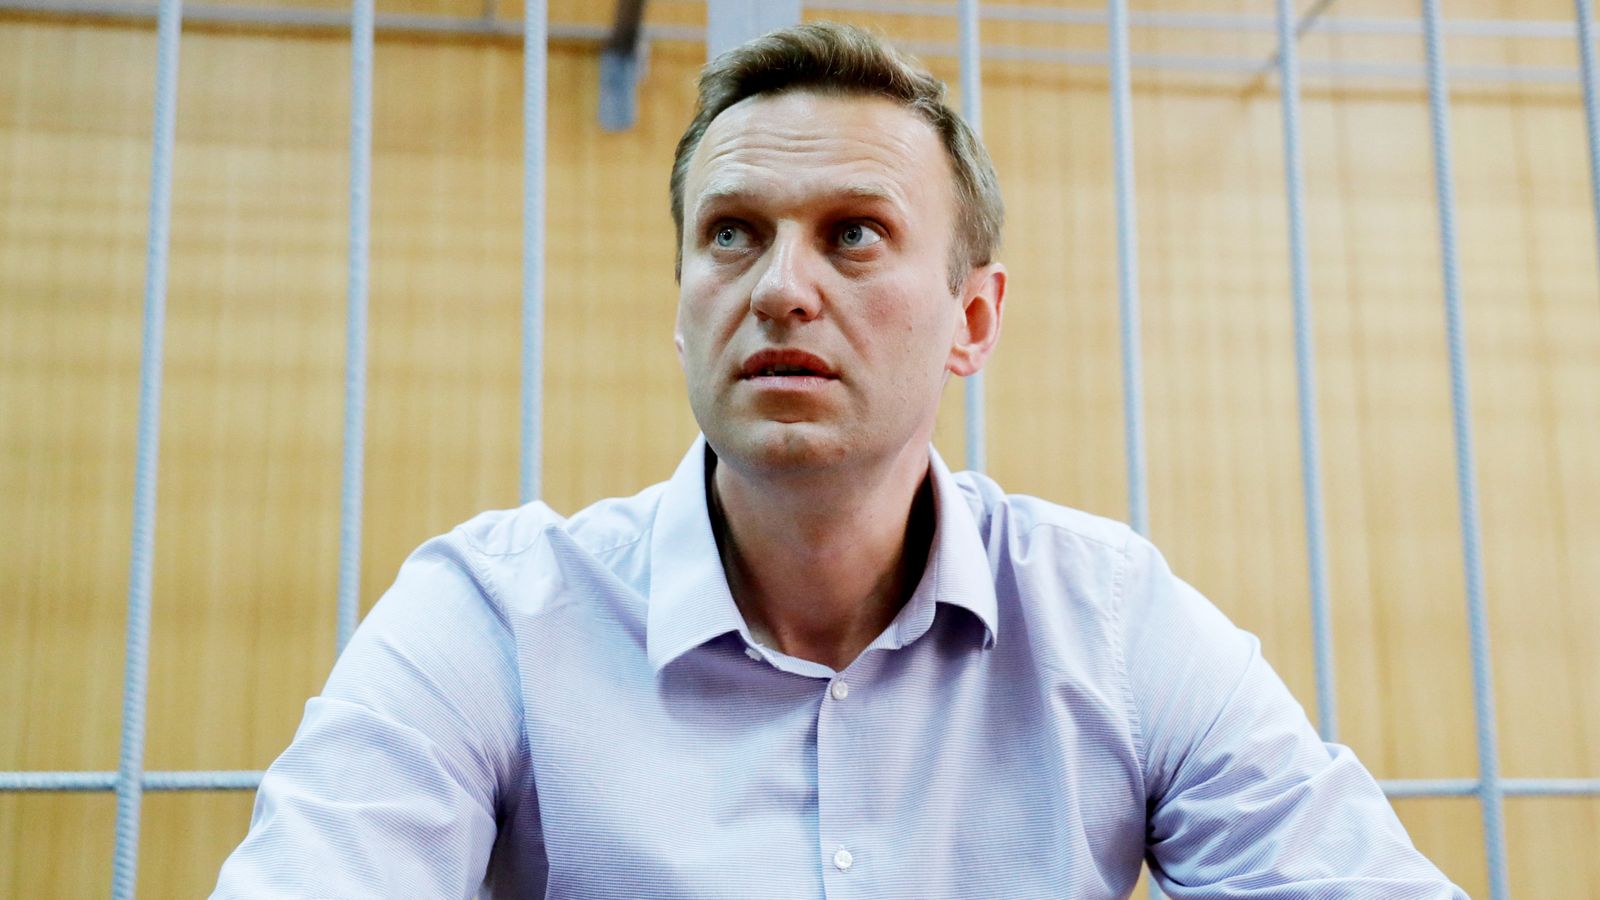 Тялото на Алексей Навални `в моргата` като затворник описва `мистериозна суматоха` - руски новини